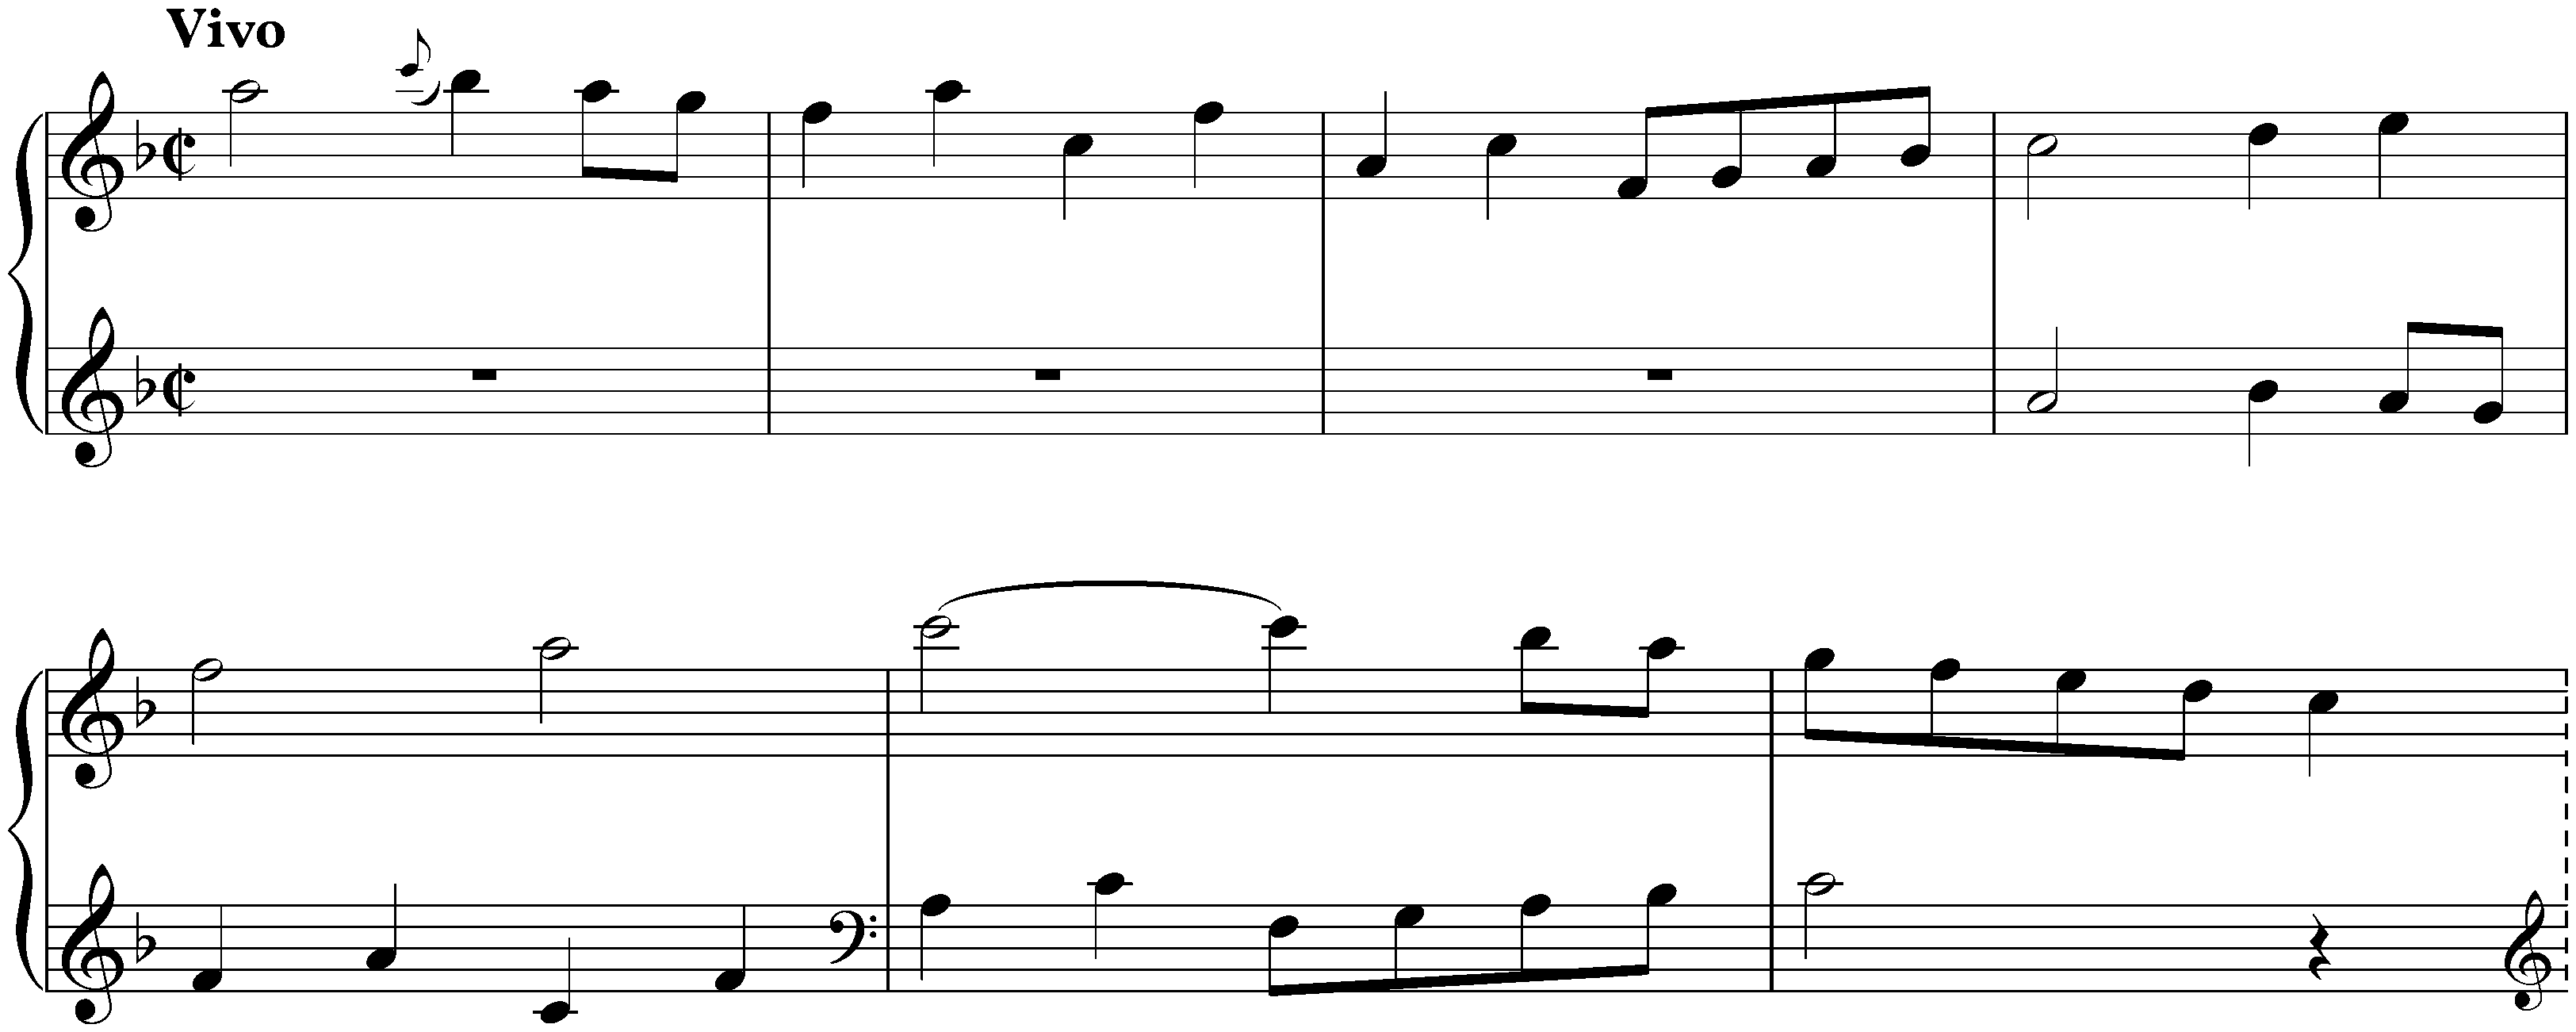 Sonata in F major, K. 195